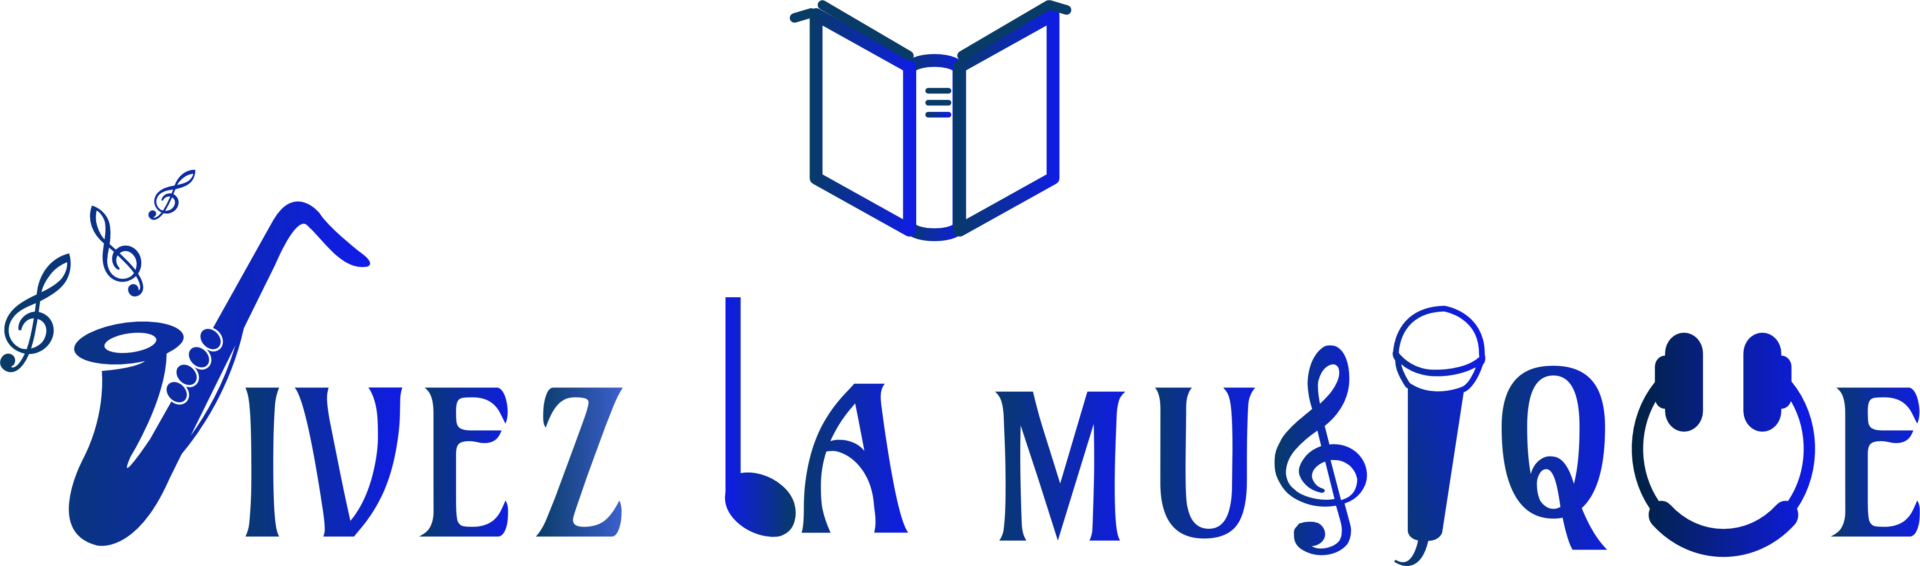 A logo of Vivez La Musique